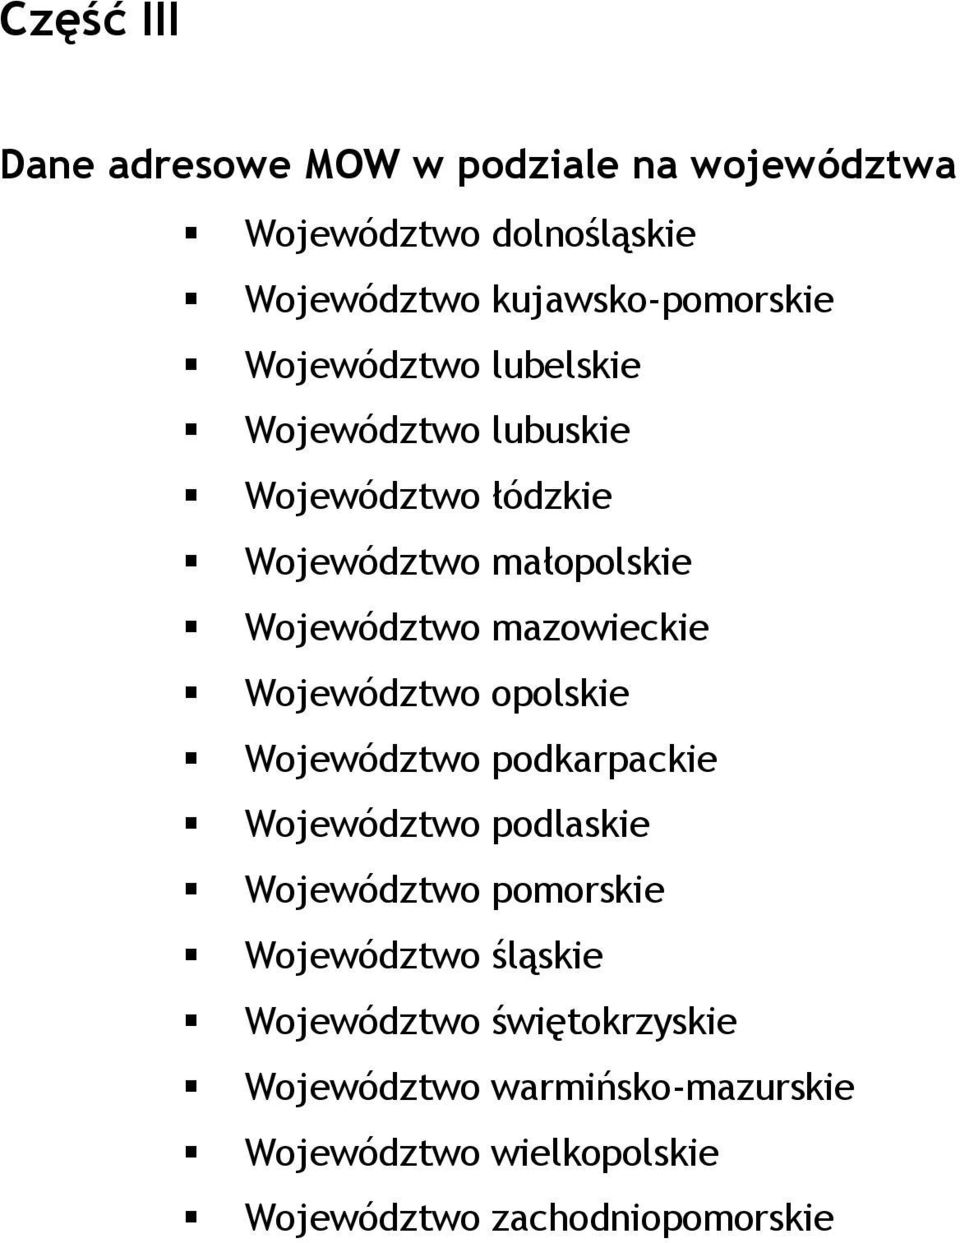 Województwo opolskie Województwo podkarpackie Województwo podlaskie Województwo pomorskie Województwo śląskie